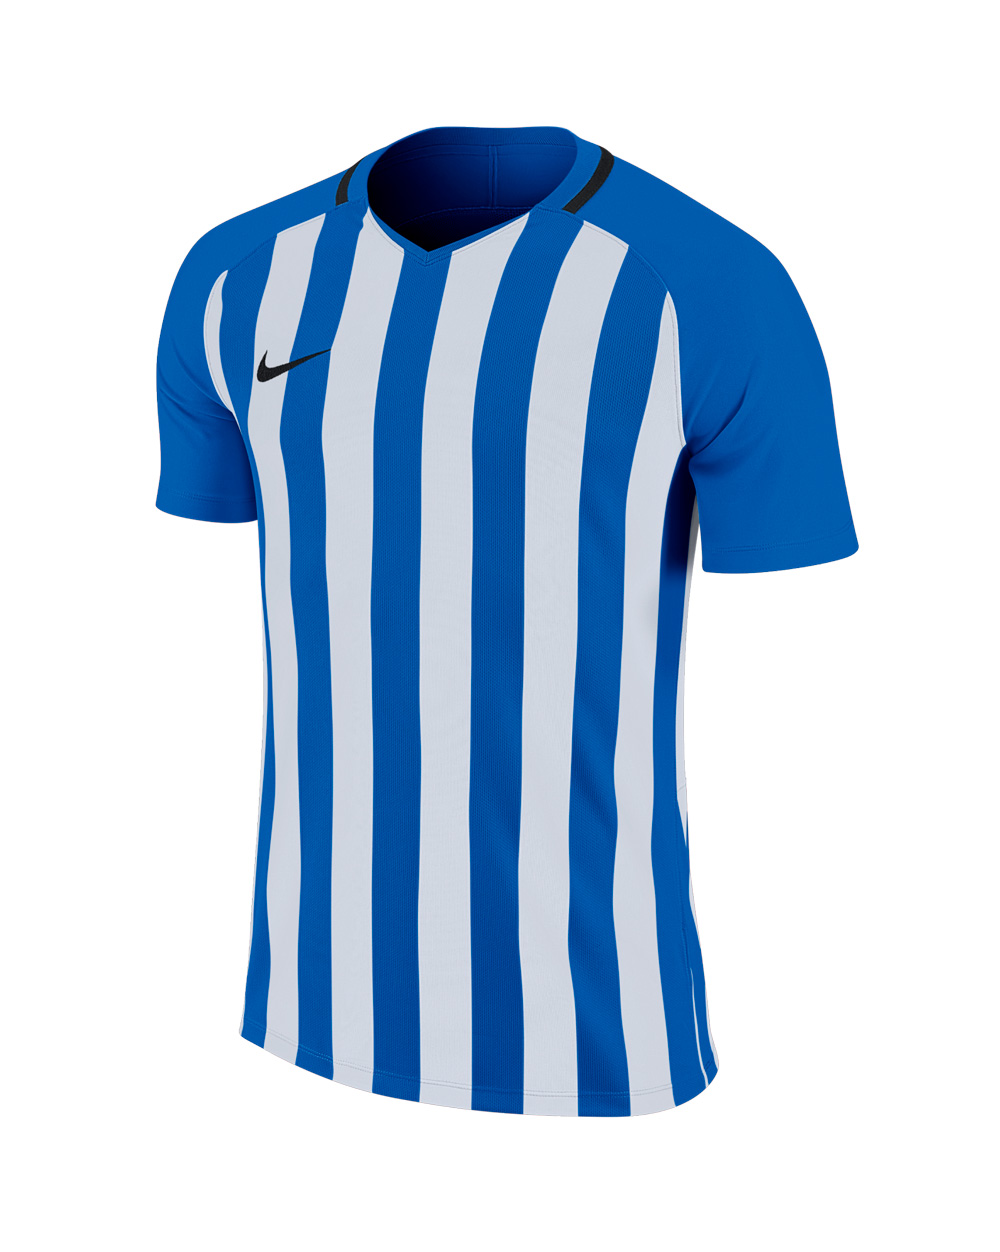 CAMISETA NIKE FUTBOL STRIPED DIVISION III AZUL - Camisetas